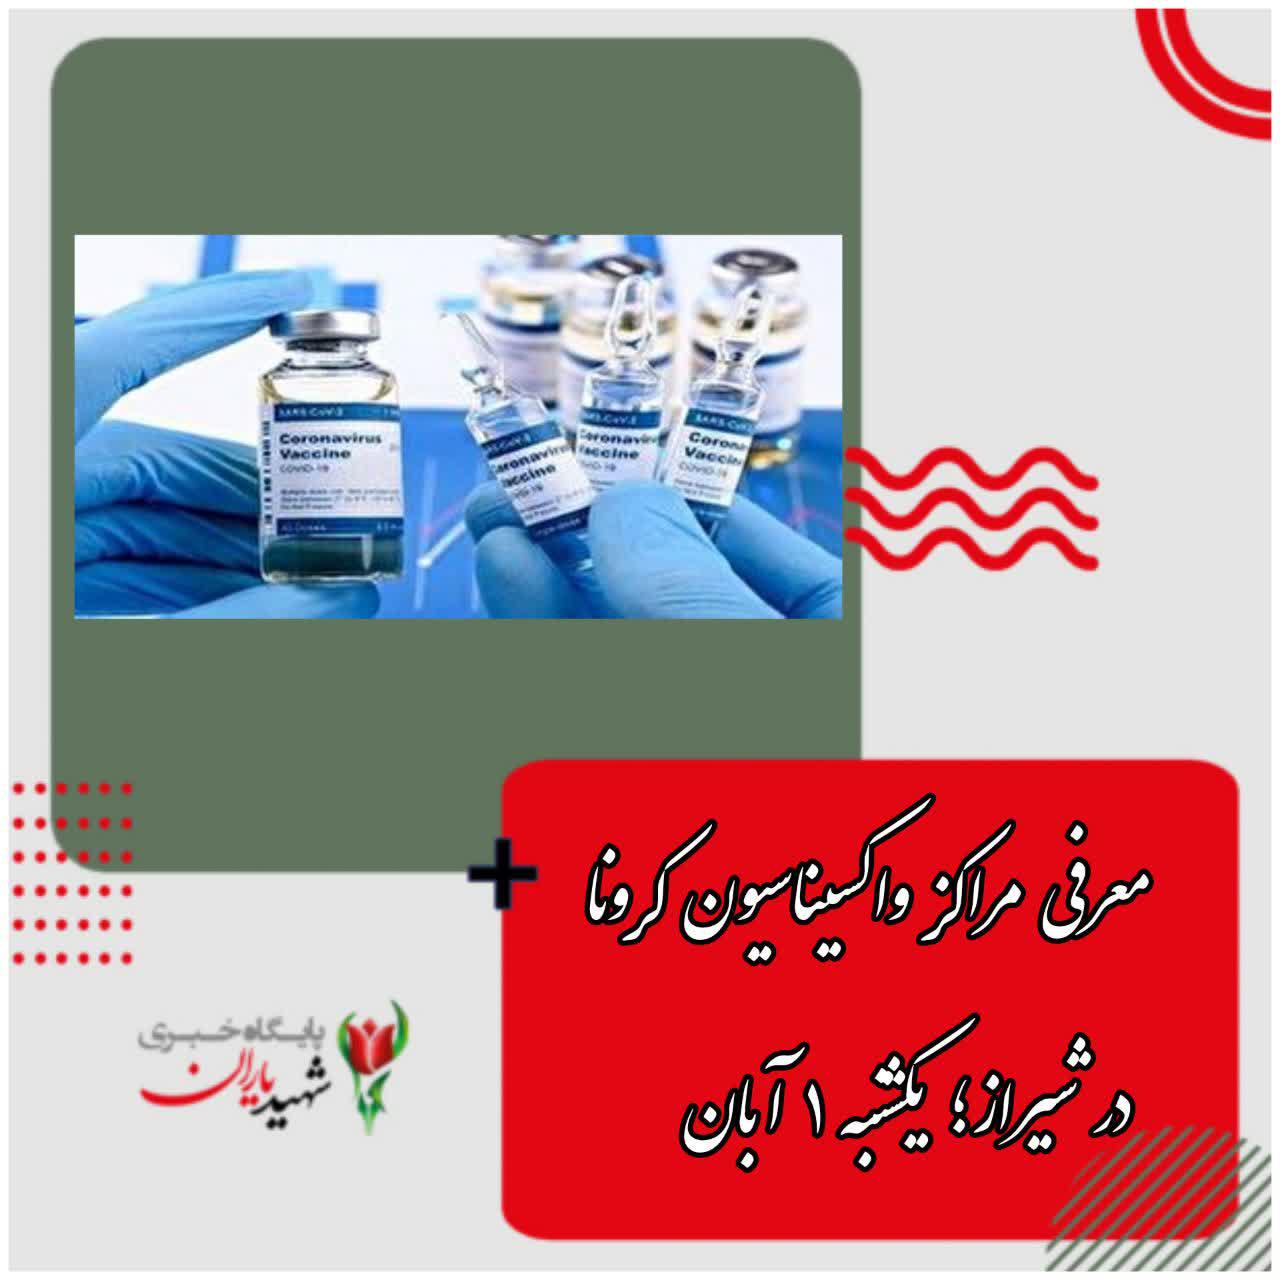 معرفی مراکز واکسیناسیون کرونا در شیراز؛ یکشنبه ۱ آبان